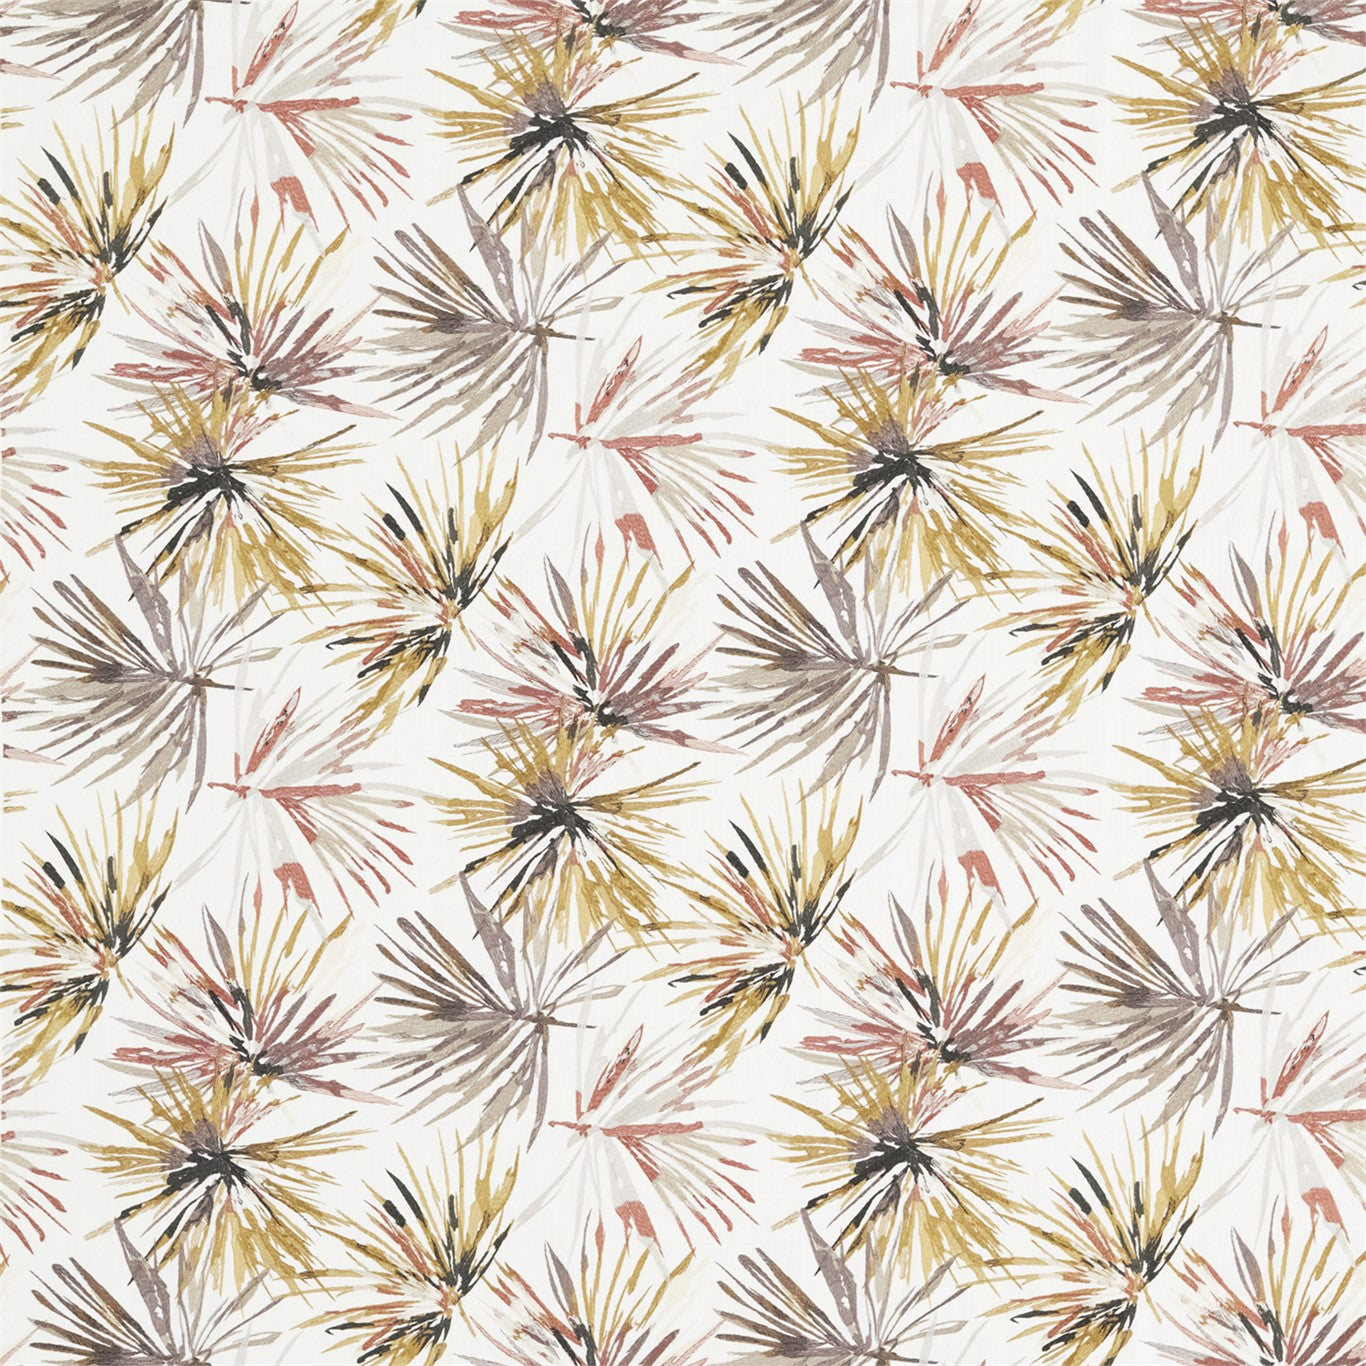 Aucuba Fabric by Harlequin - HMOE132241 - Paprika/Ochre